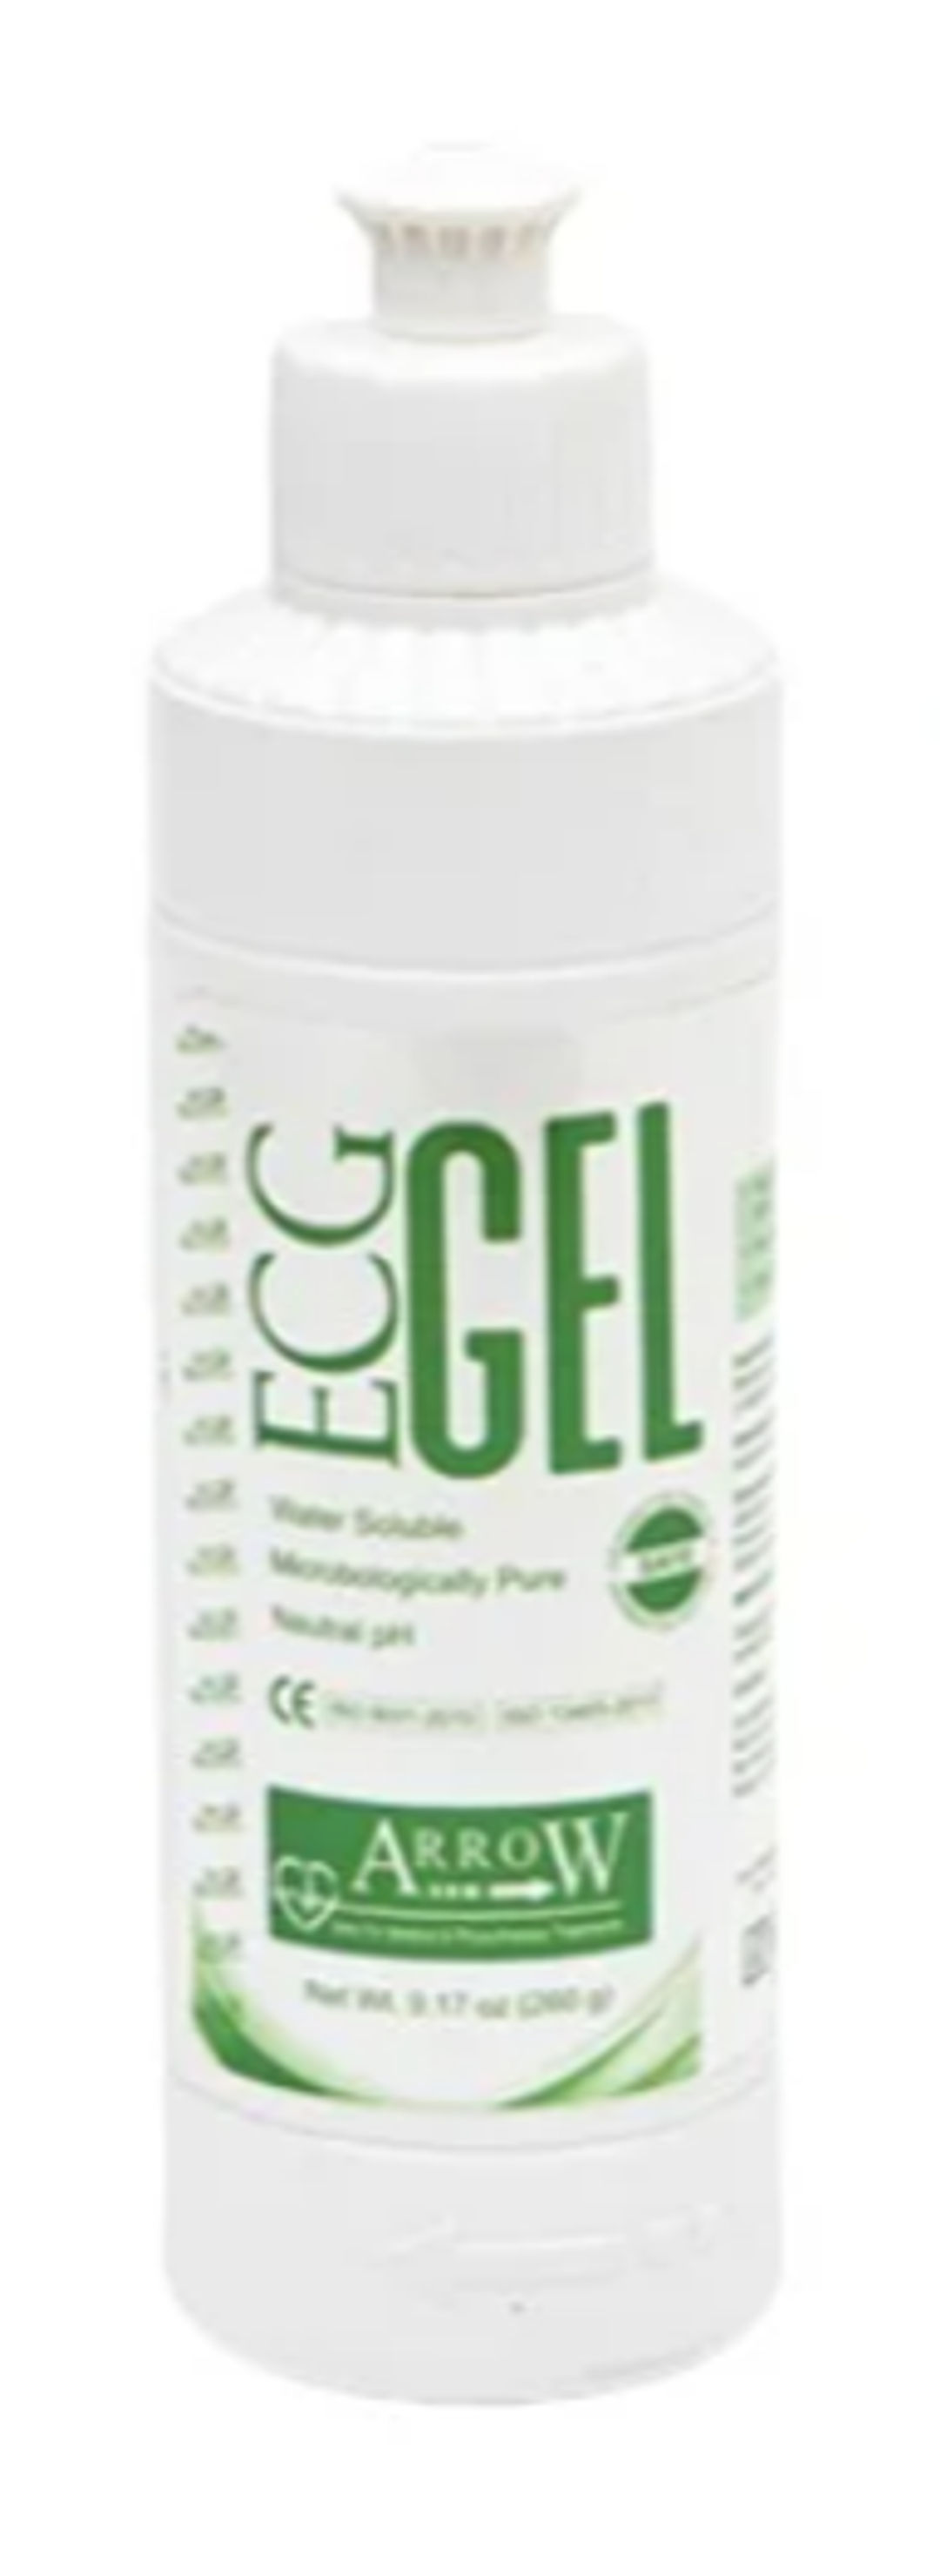 Arrow Clear White ECG Gel - 260gms Bottle (AECG 260)